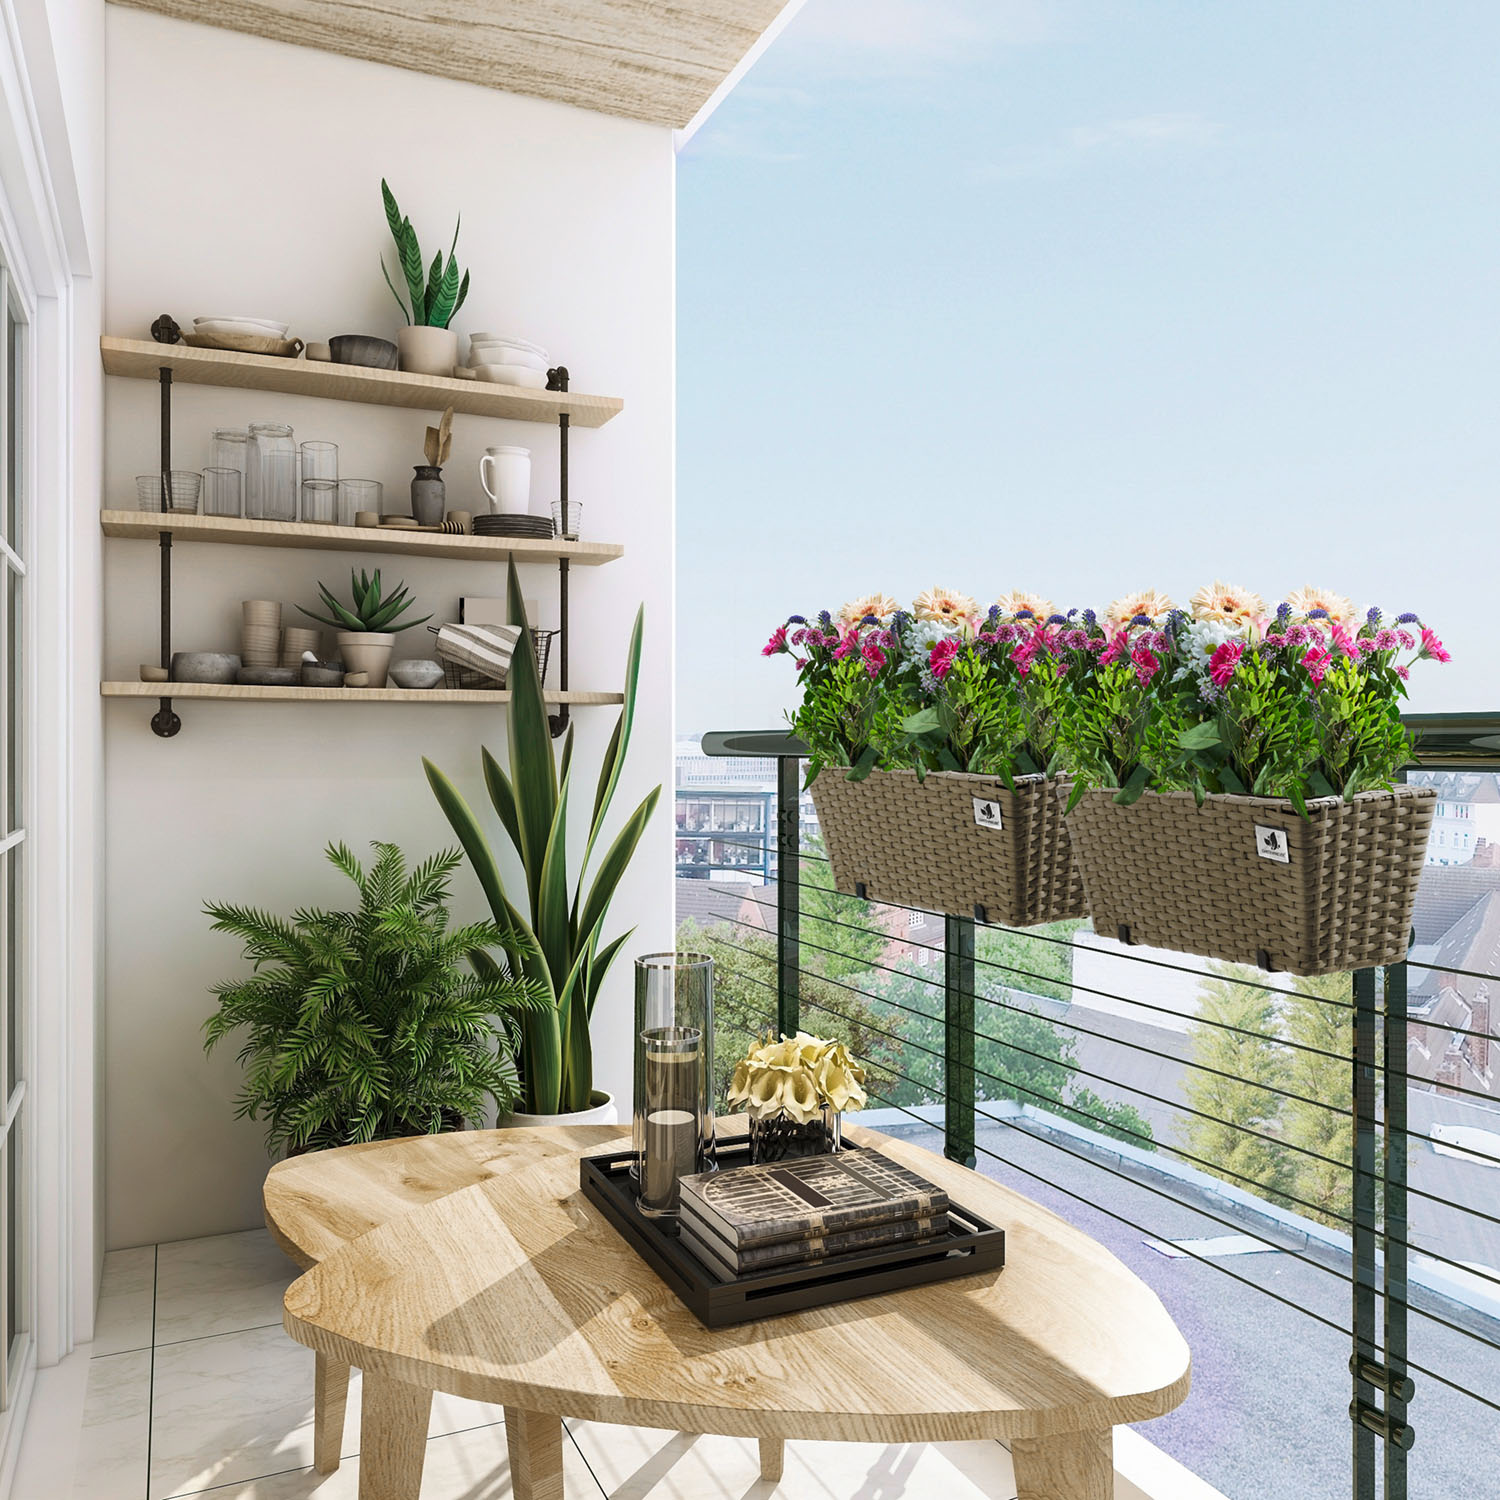 4-er Set Balkonkästen Gartenfreude der von Marke